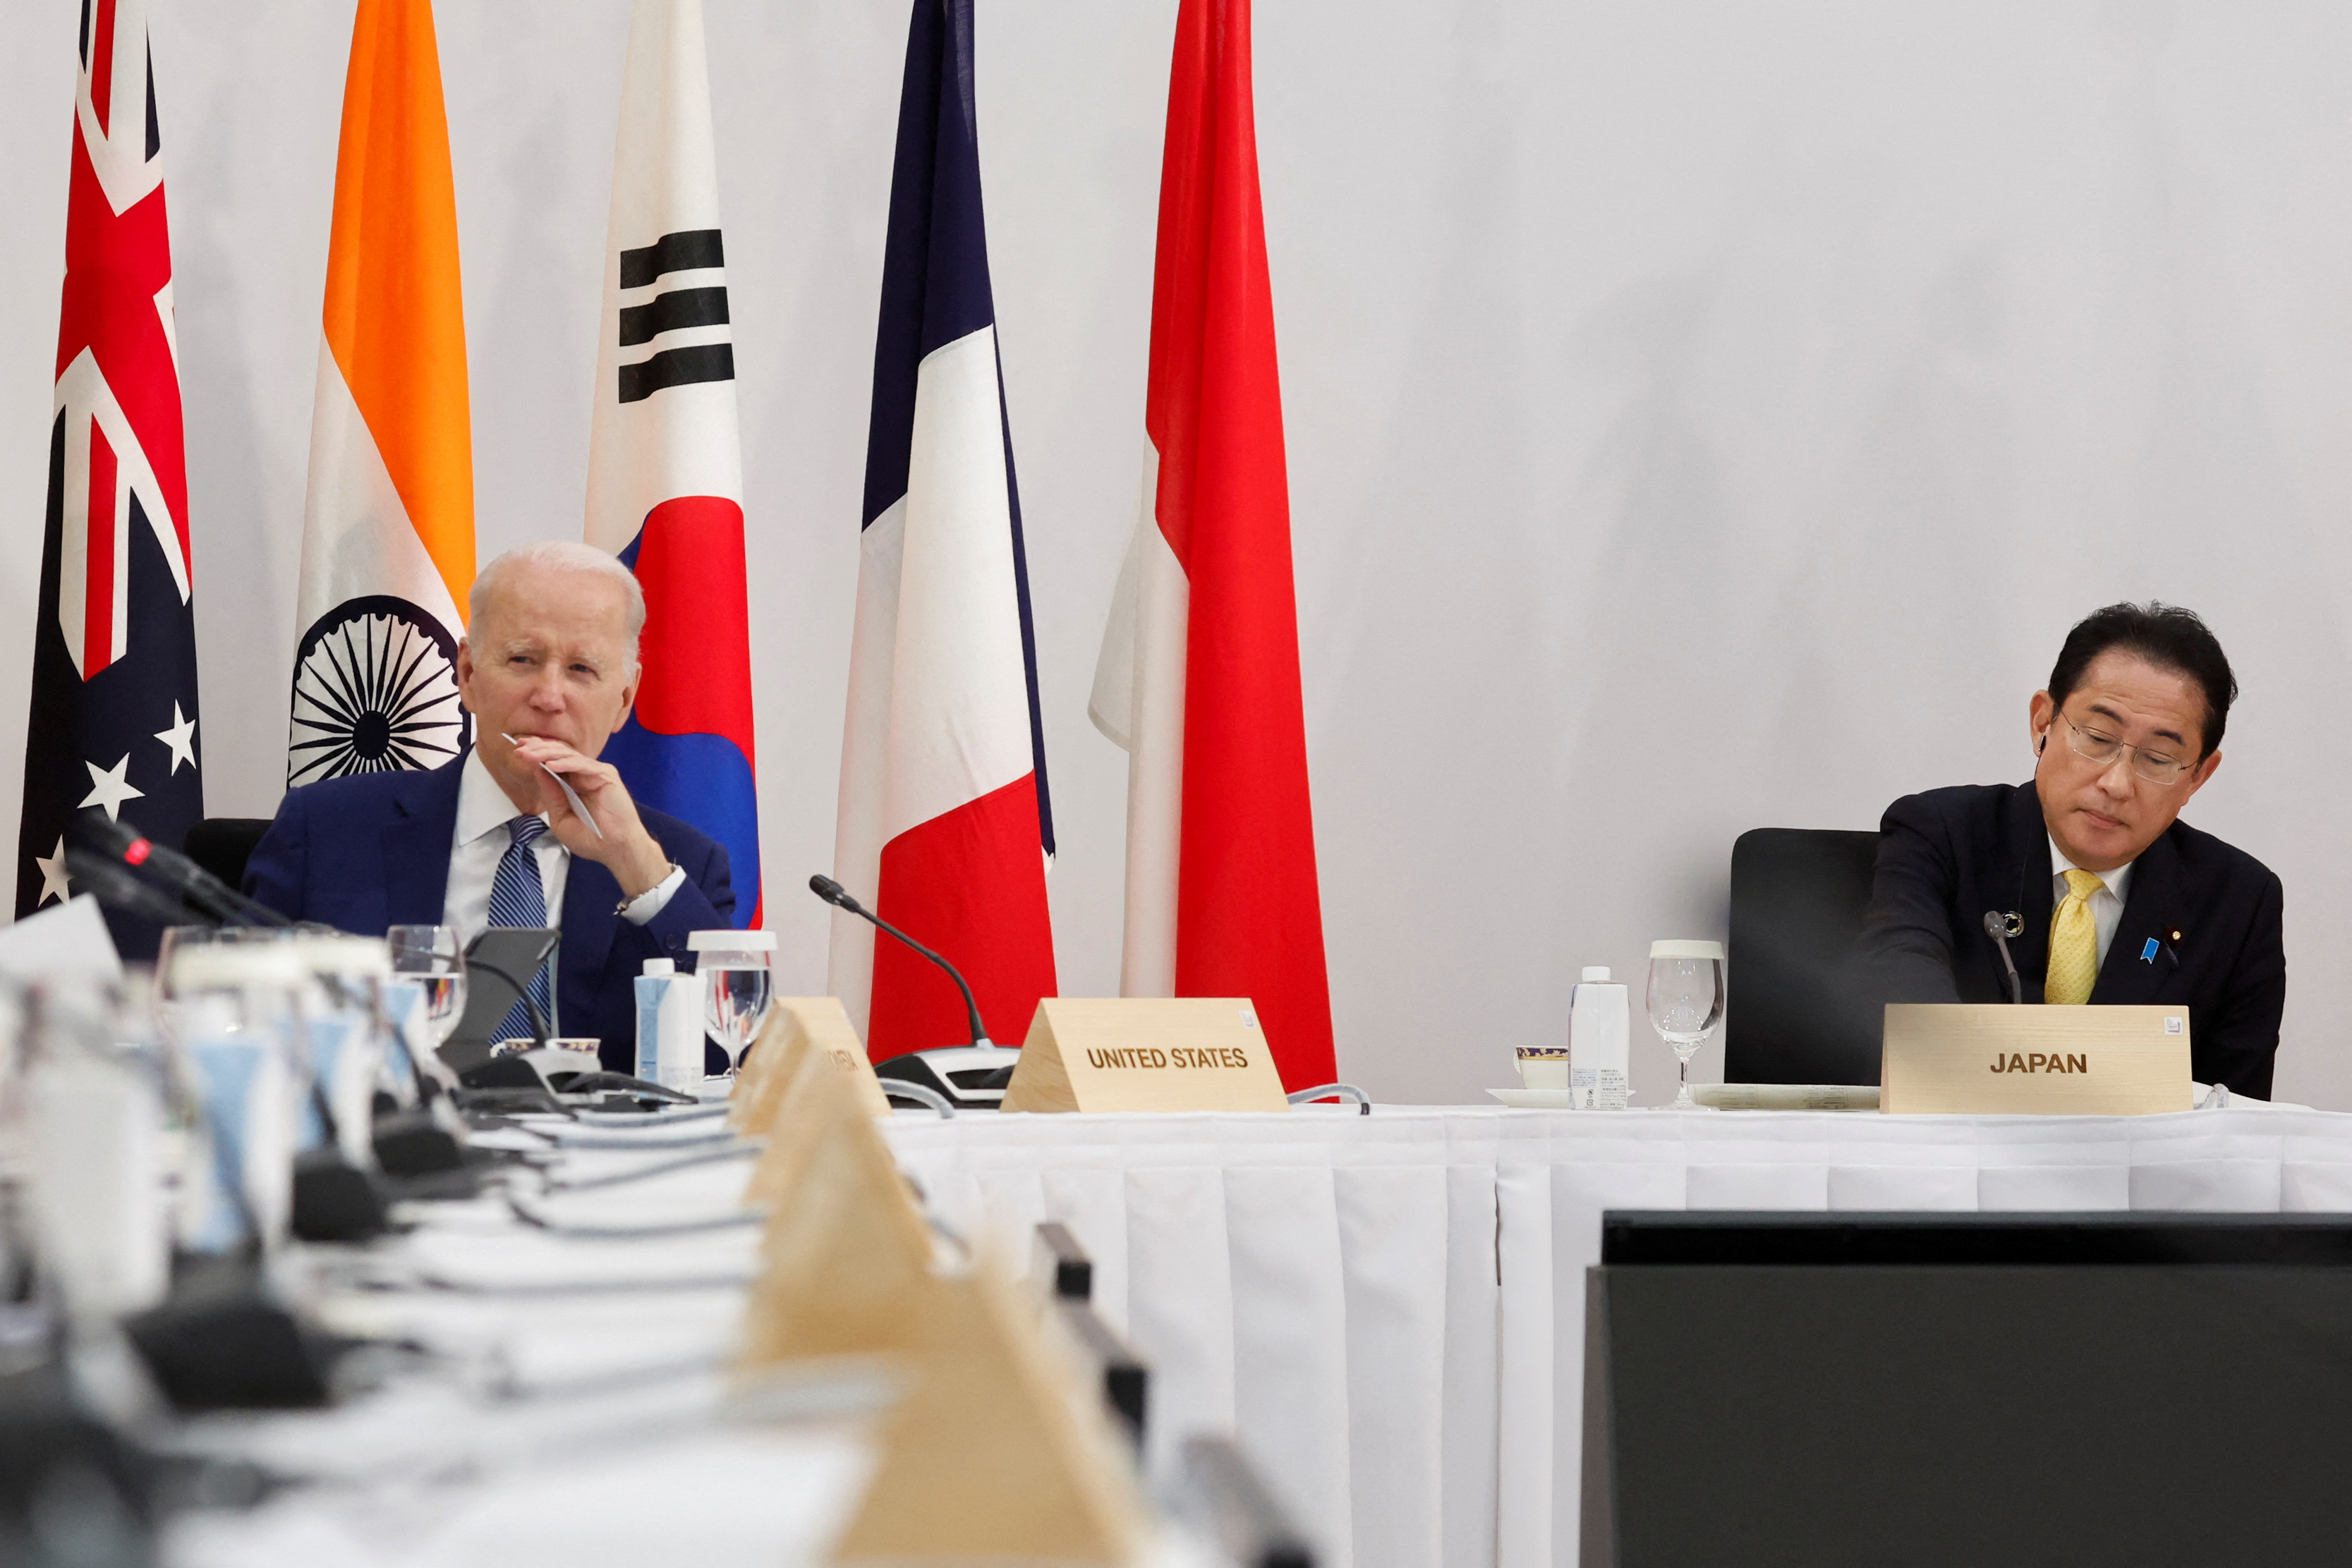 G7 summit in Hiroshima